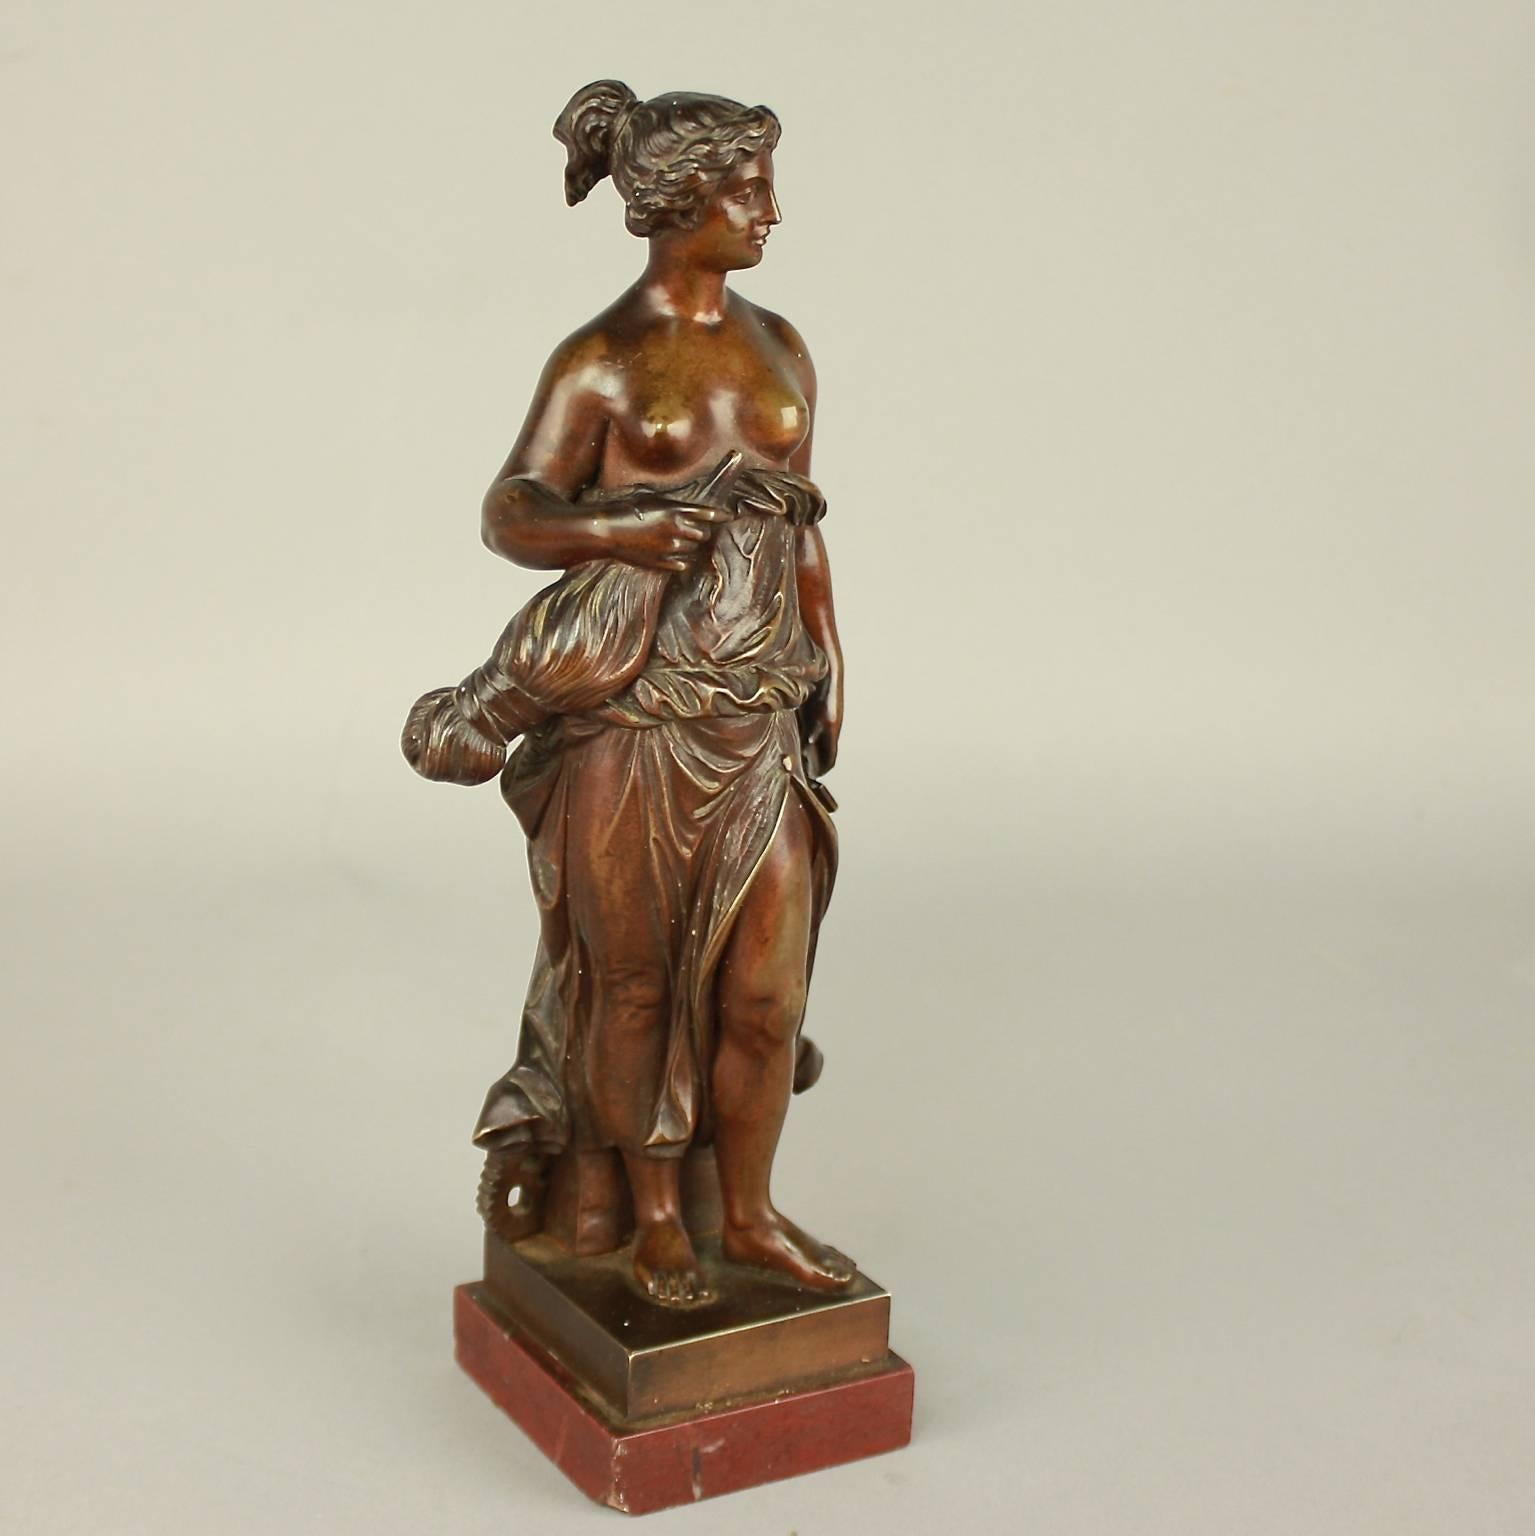 Kleine patinierte weibliche Bronzefigur aus dem 19. Jahrhundert, die eine Allegorie der Manufaktur mit einer Spindel, einem Hammer und einem Zahnrad darstellt. Die weibliche Figur hält ihre helle Tunika hoch und schaut zuversichtlich nach vorne.